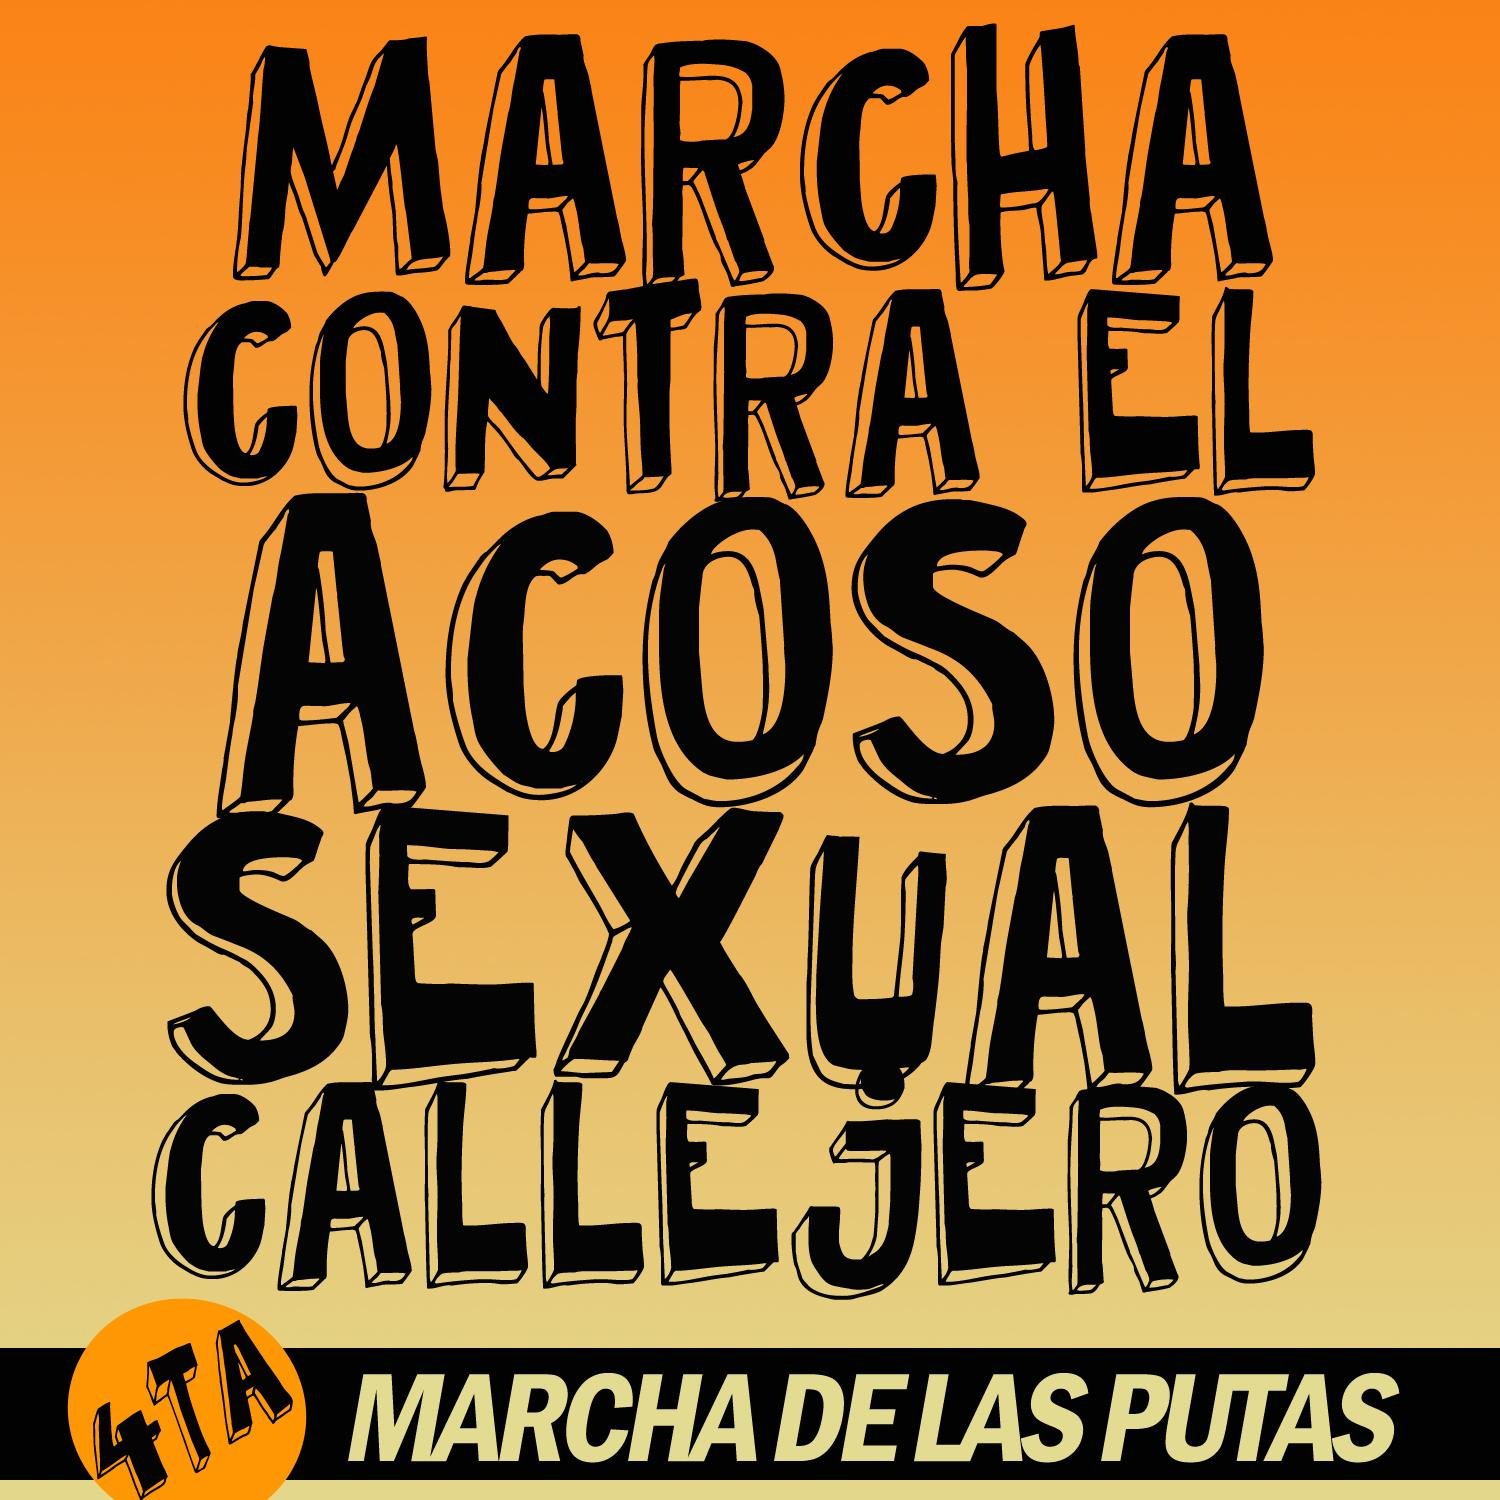 Apala, asociación por los derechos de la mujer. Organizamos La Marcha de las Putas en Lima. Luchamos contra cualquier tipo de violencia en el espacio urbano.